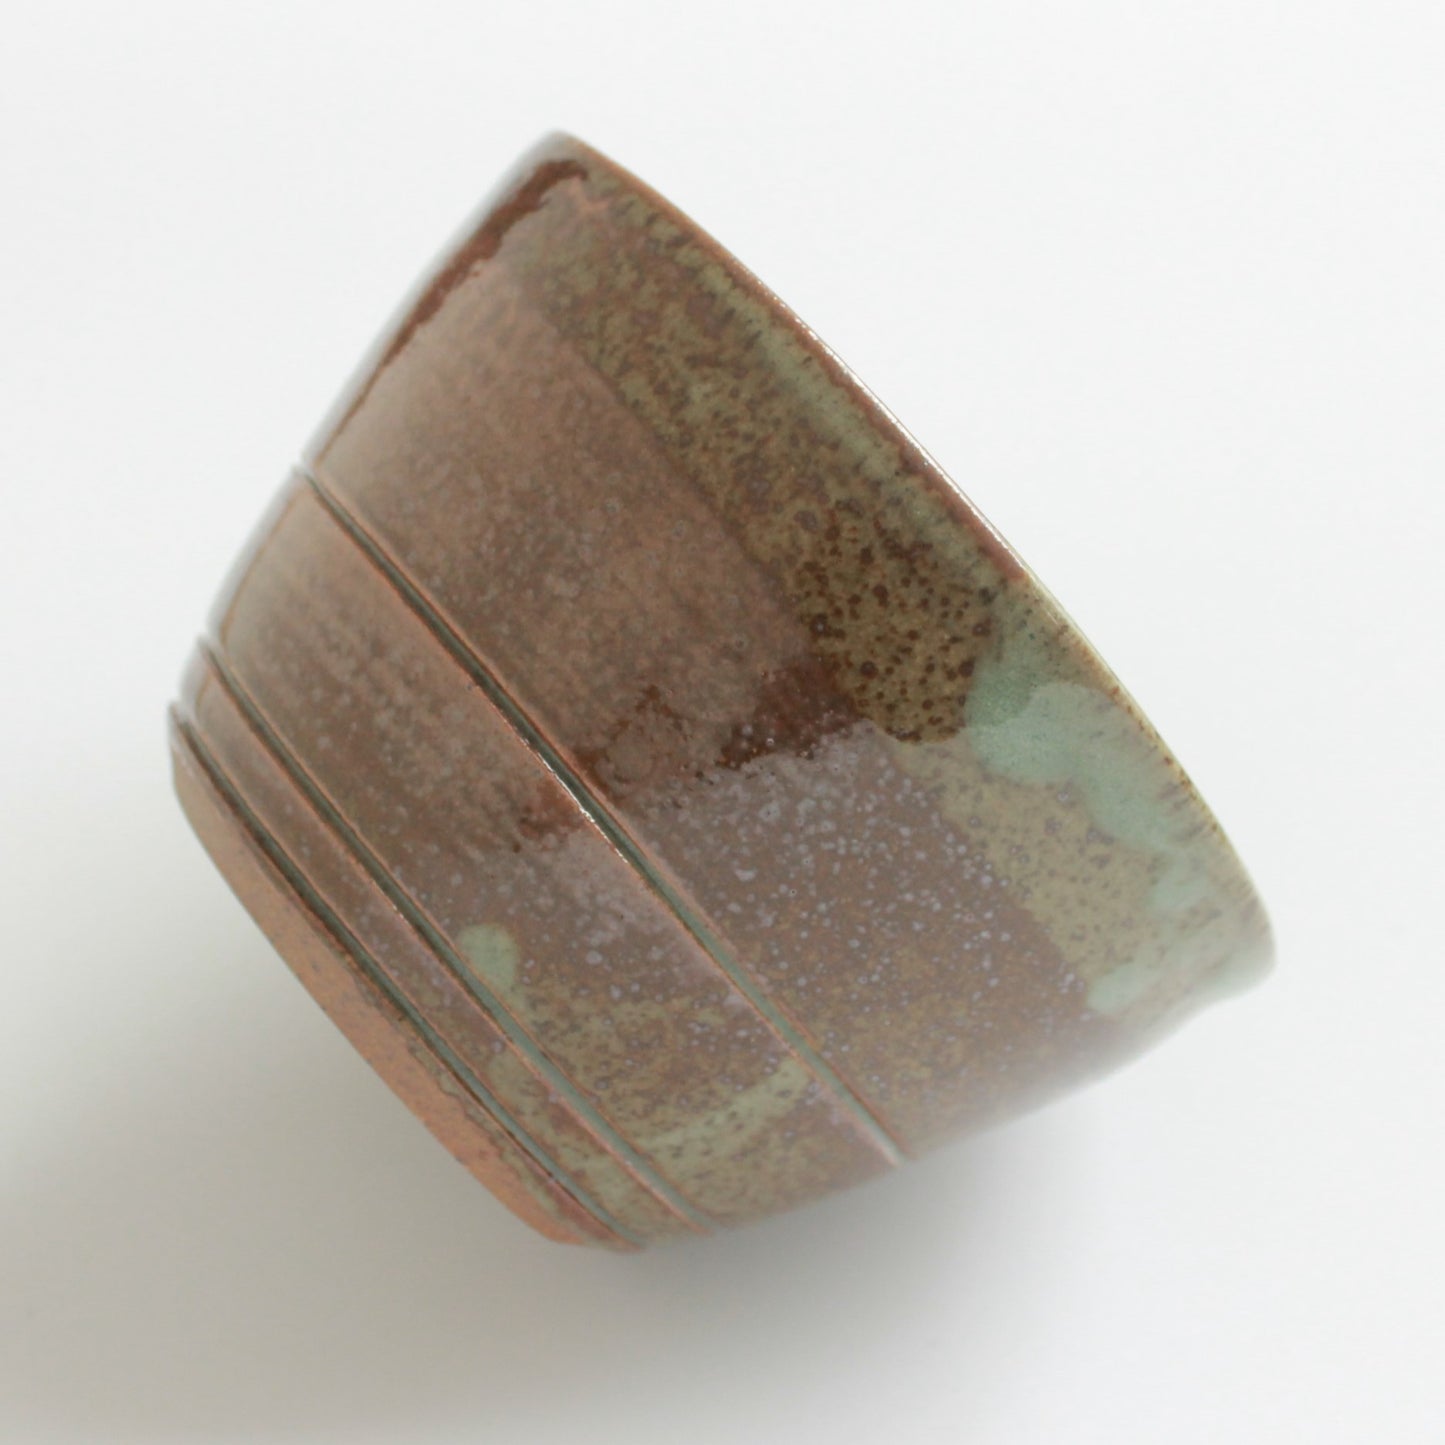 Medium Bowl - AJ Ceramics